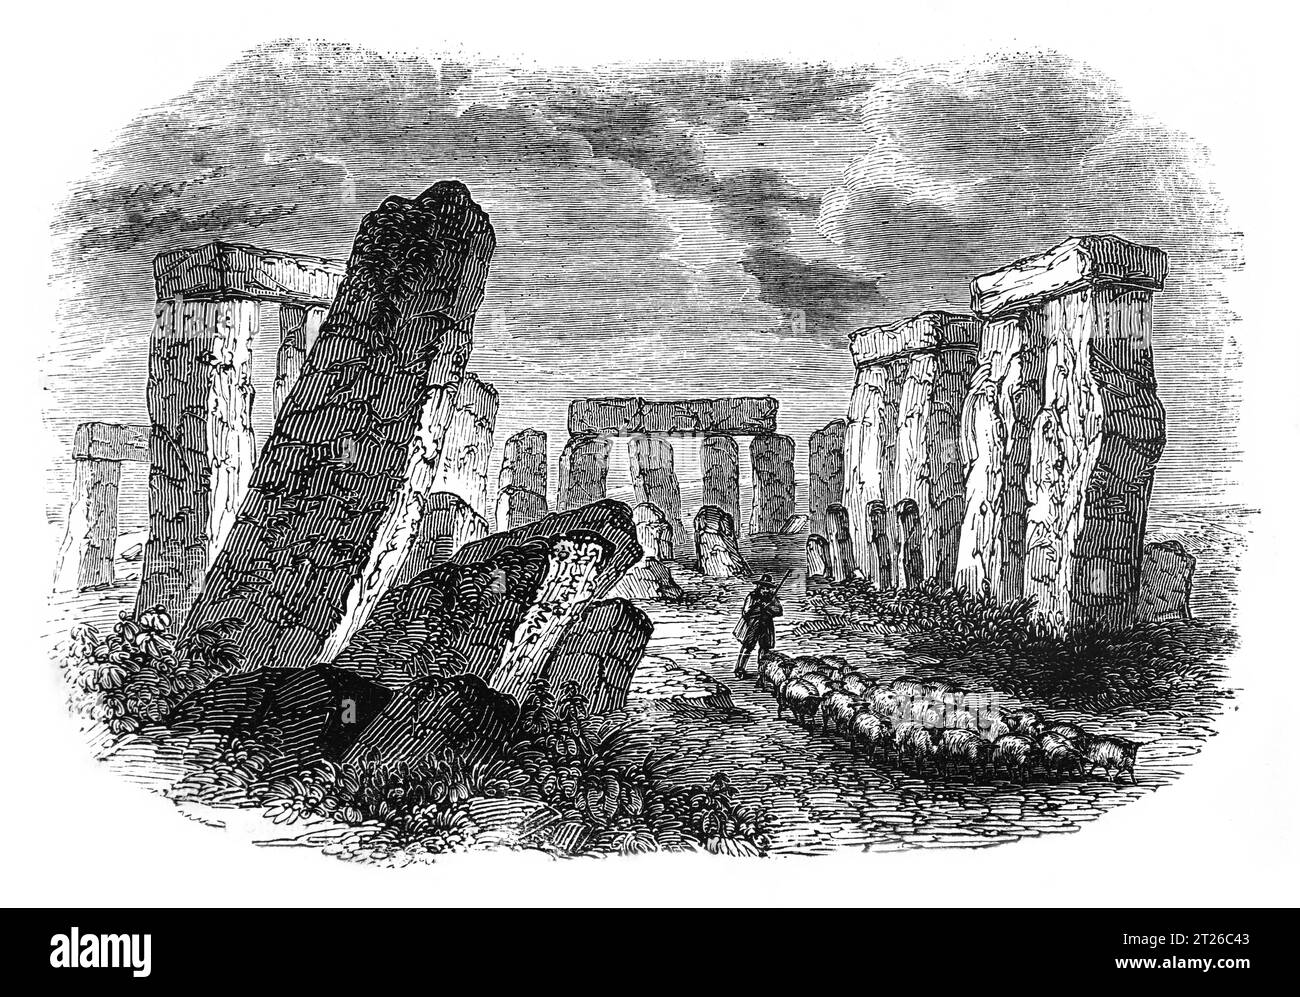 Stonehenge antes de la restauración alrededor de 1860. Ilustración en blanco y negro de la 'Vieja Inglaterra' publicada por James Sangster en 1860. Foto de stock